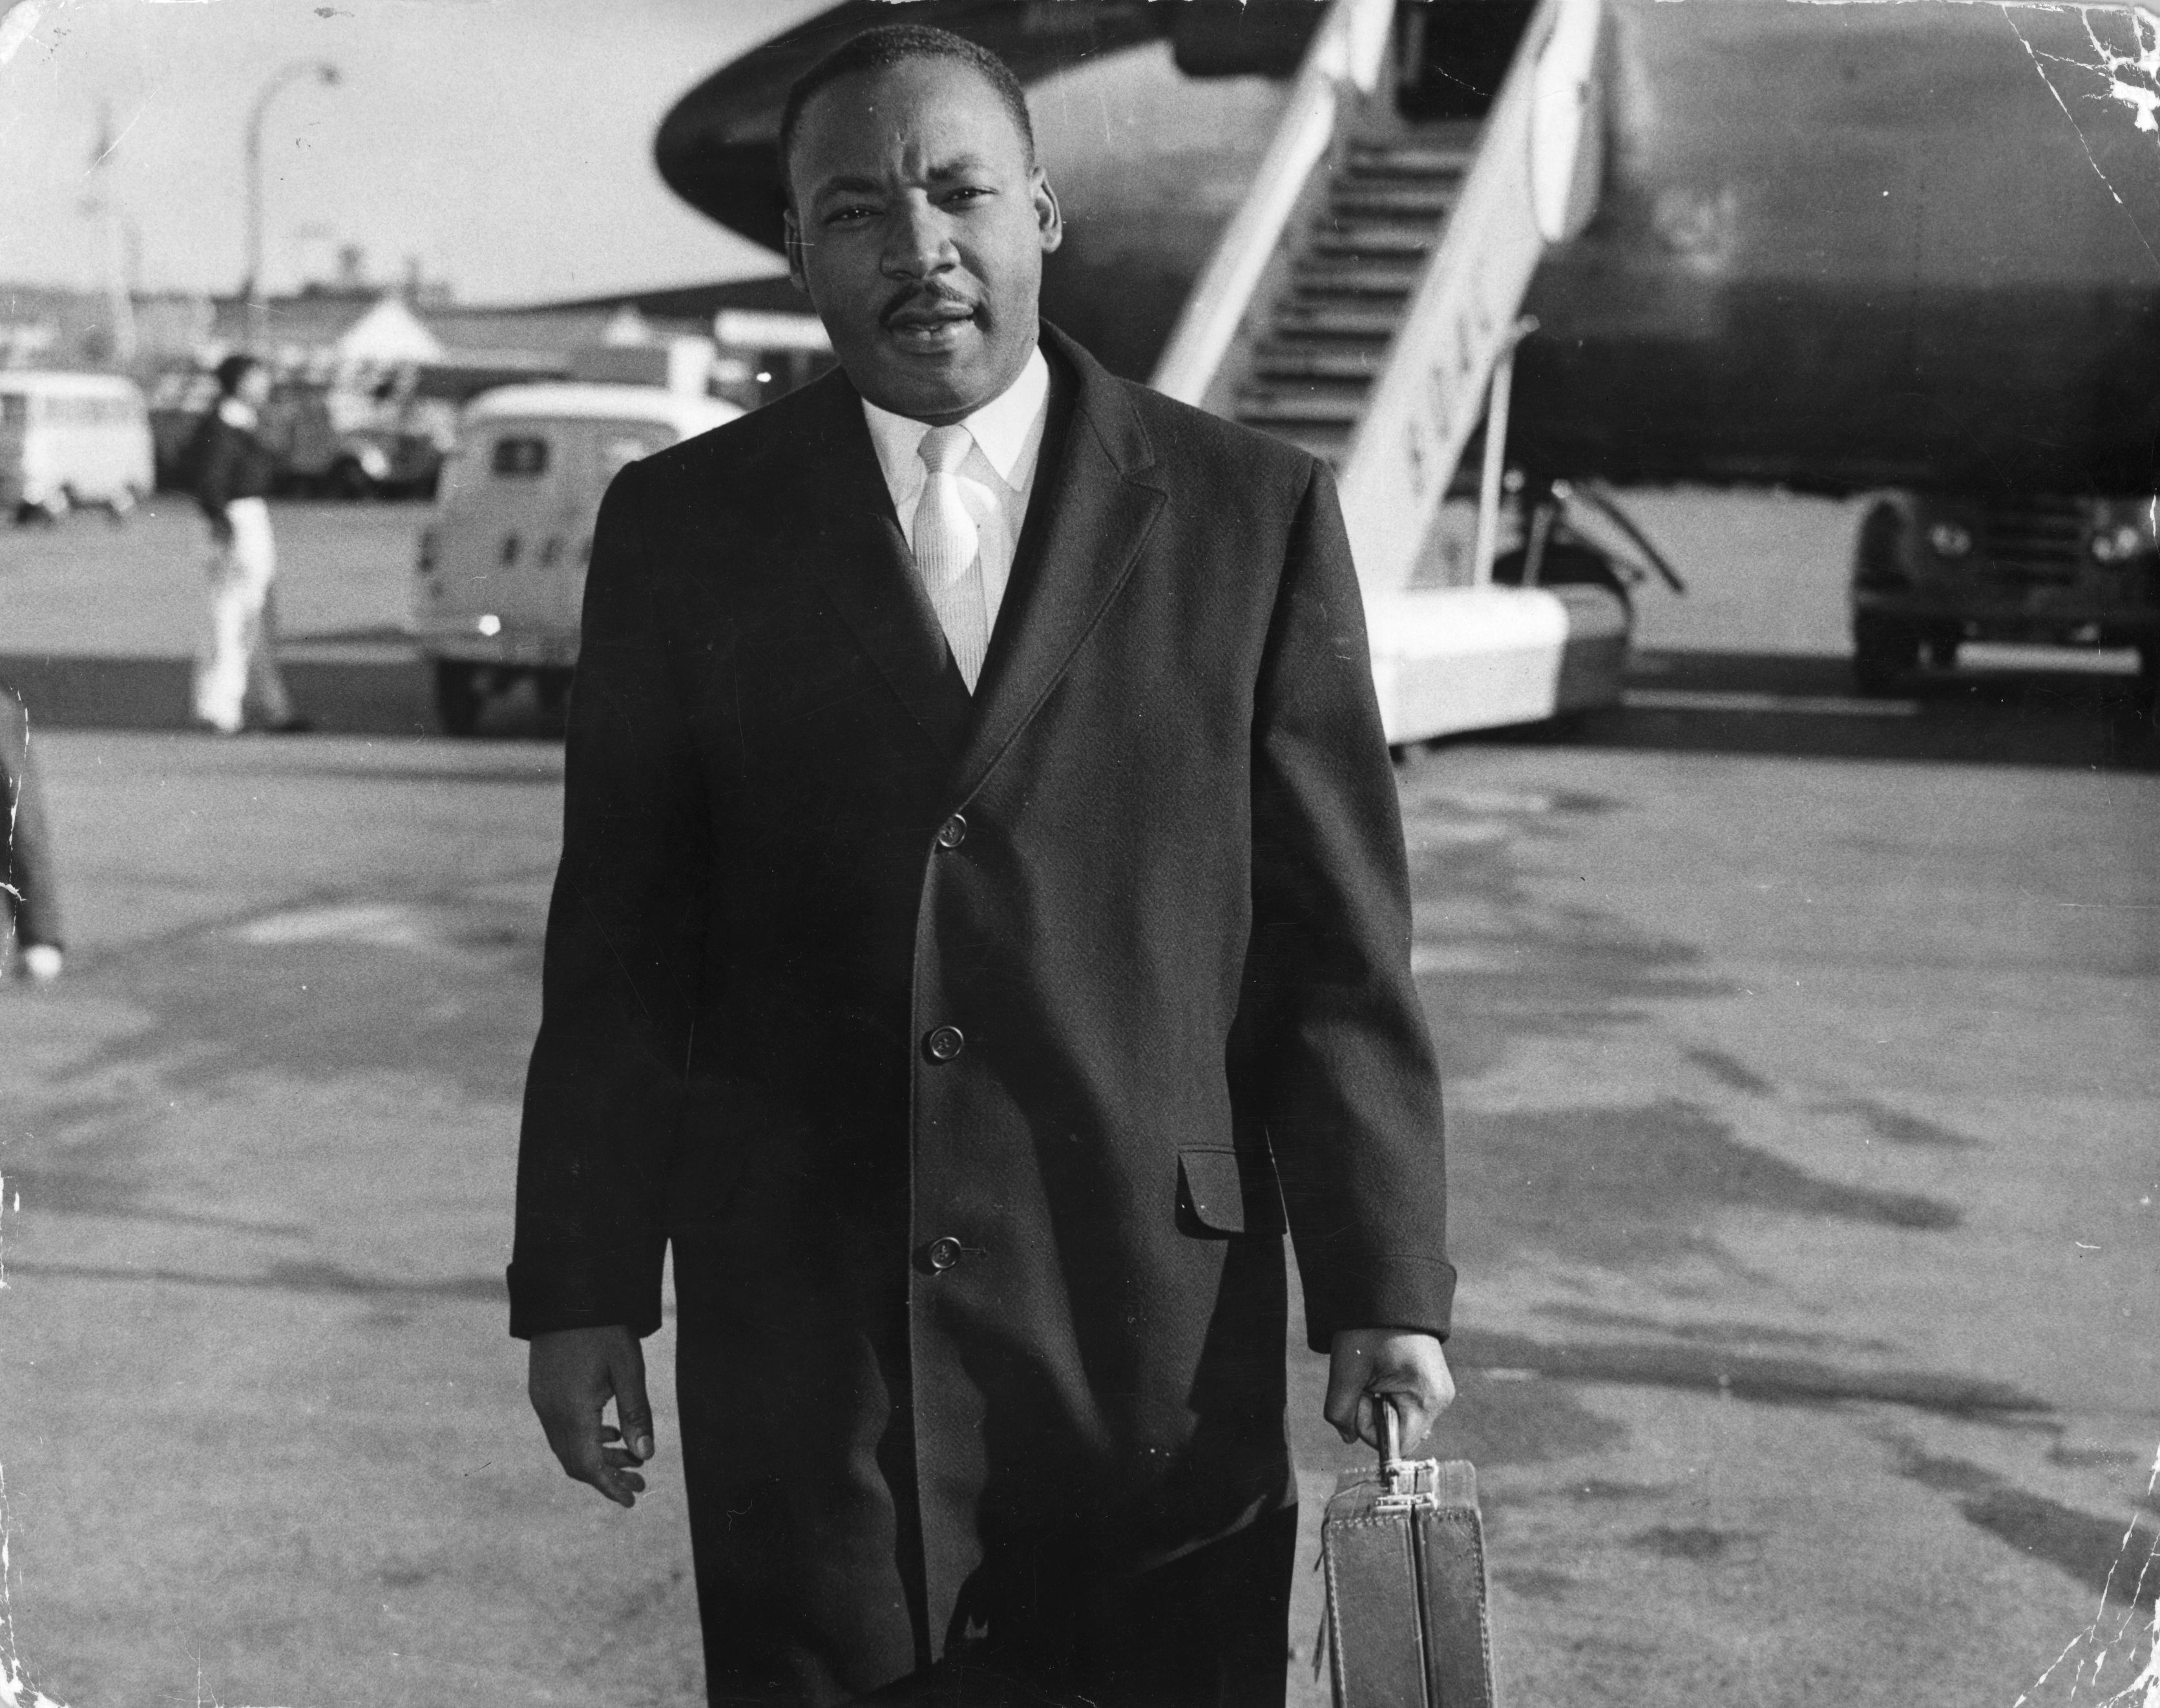 1968 година<br />
"Церемонията за наградите Оскар е отложена за два дена заради убийството на Мартин Лутър Кинг младши на 4 април.